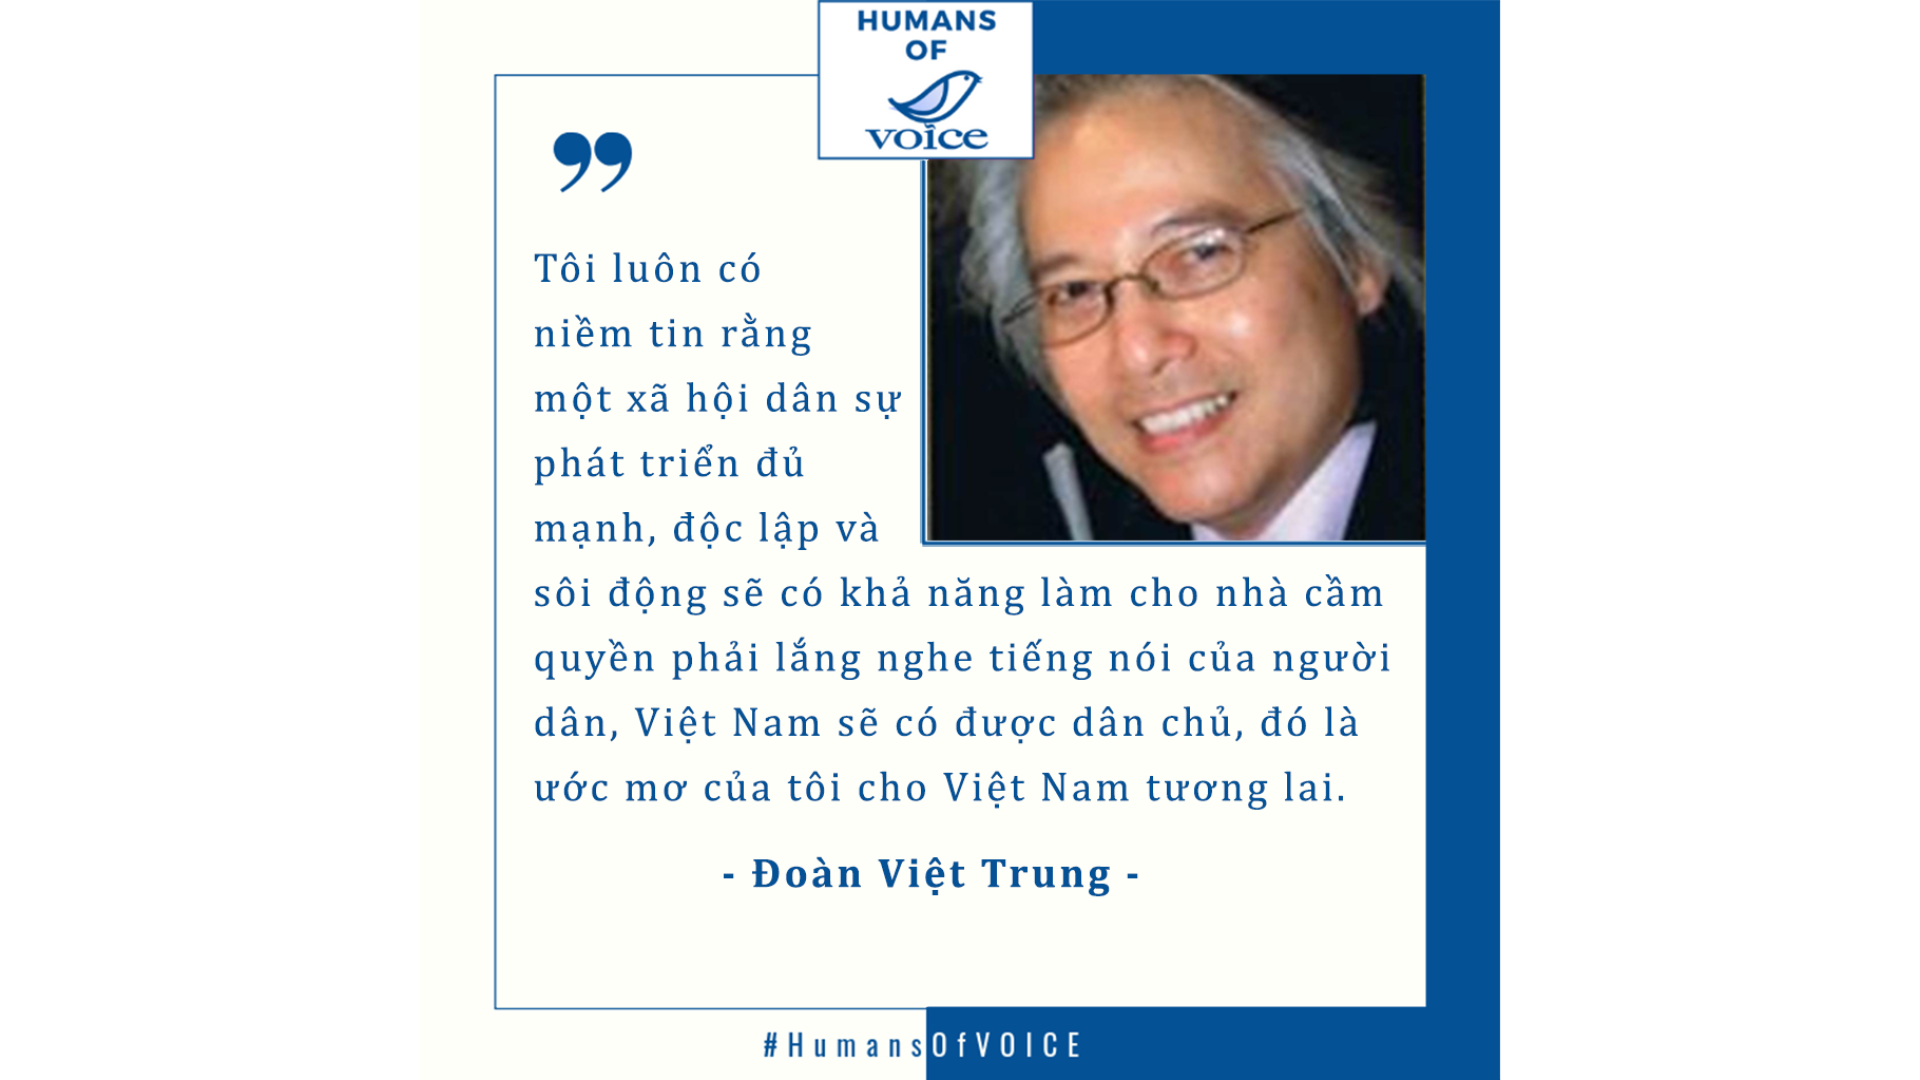 Humans of VOICE: Đoàn Việt Trung